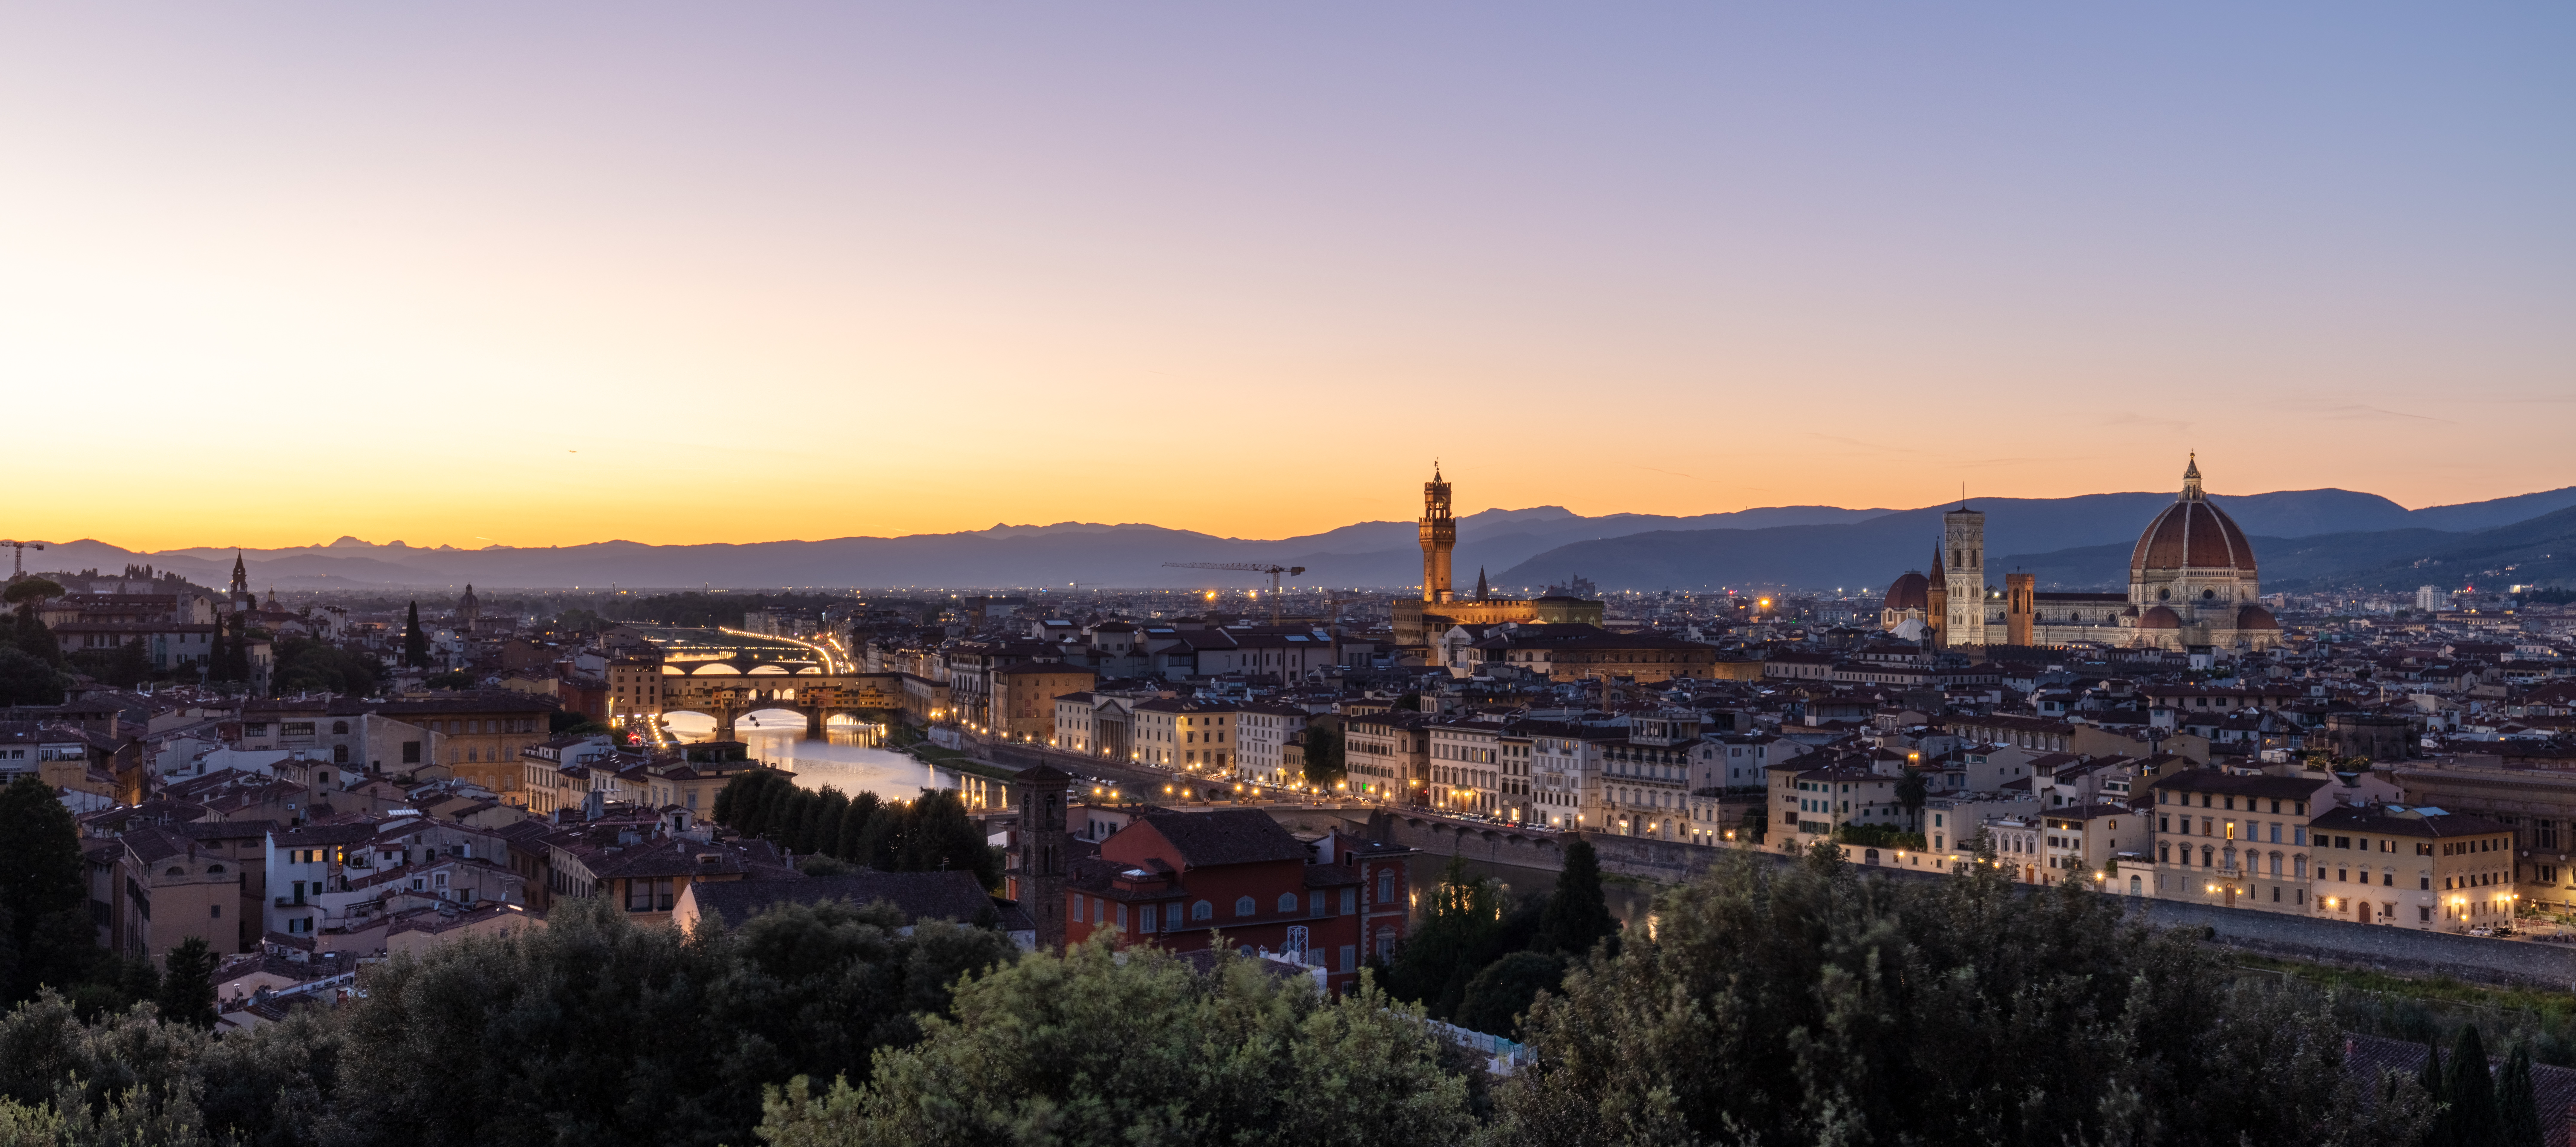 Florence - Wikipedia